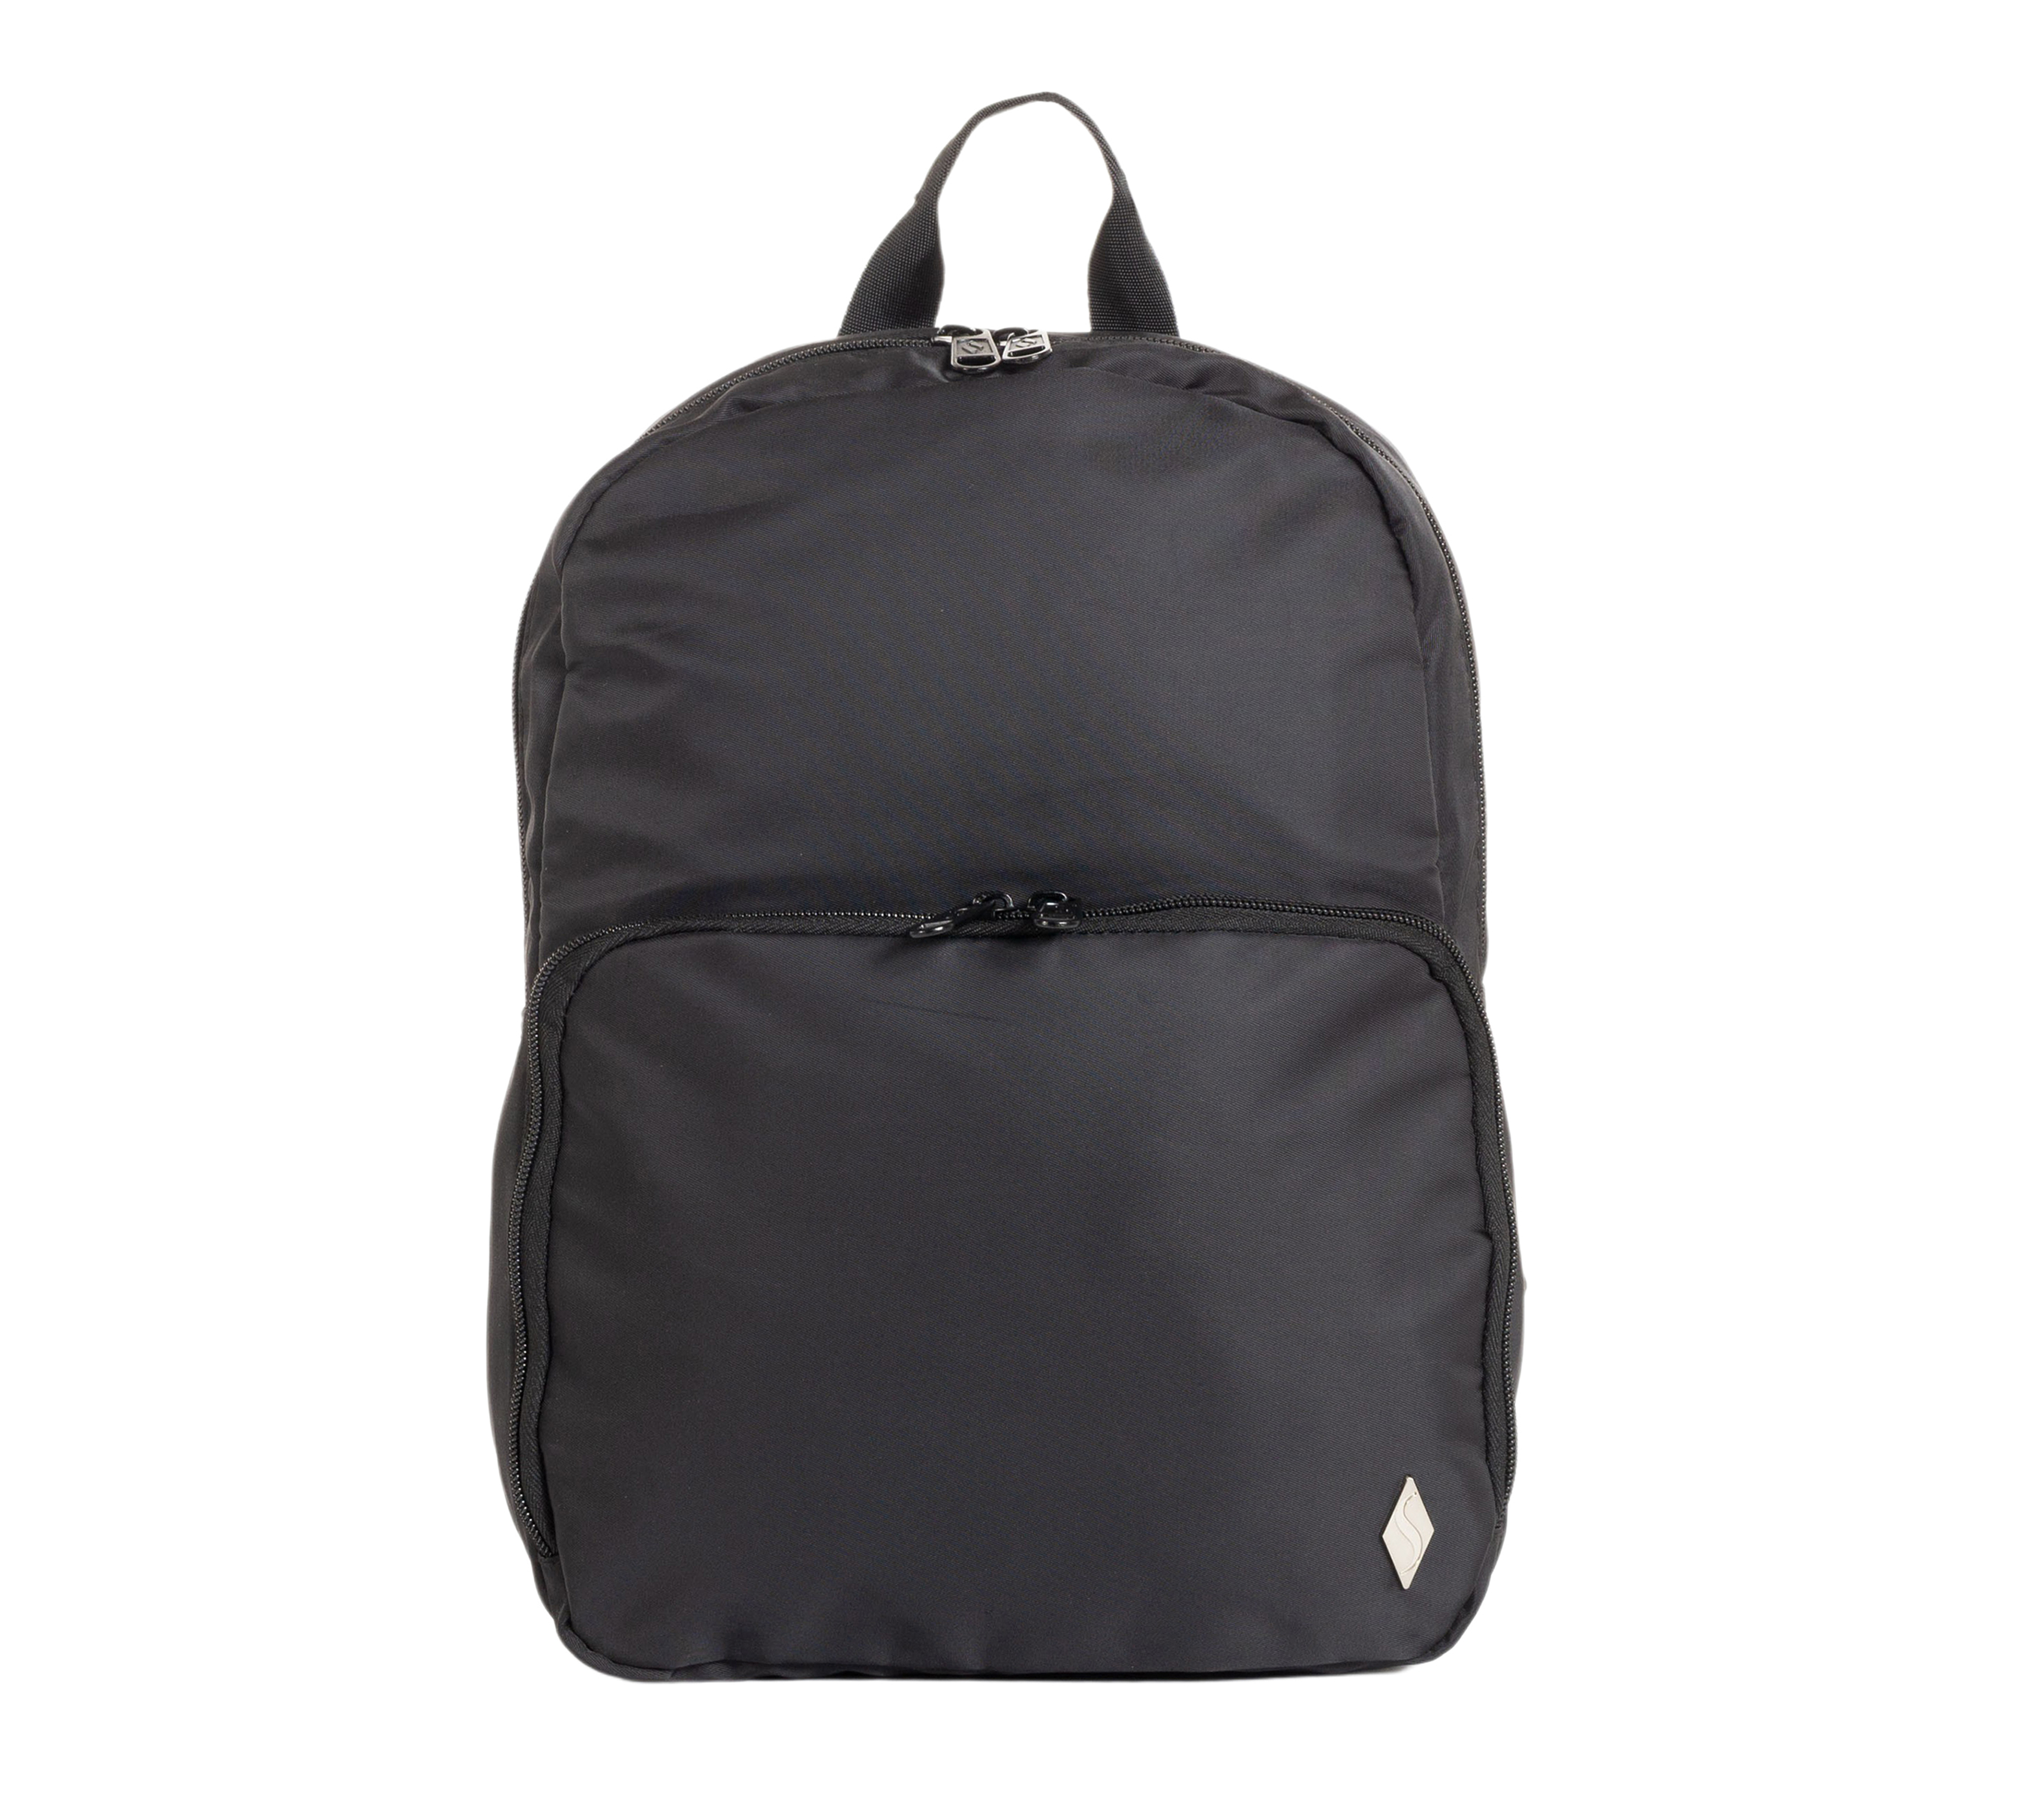 Skechers Accessories Jetsetter Backpack Black Nylon